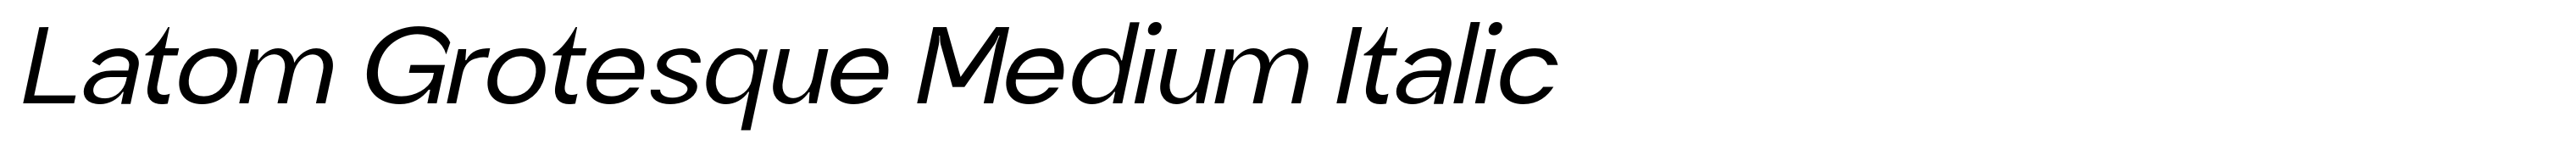 Latom Grotesque Medium Italic